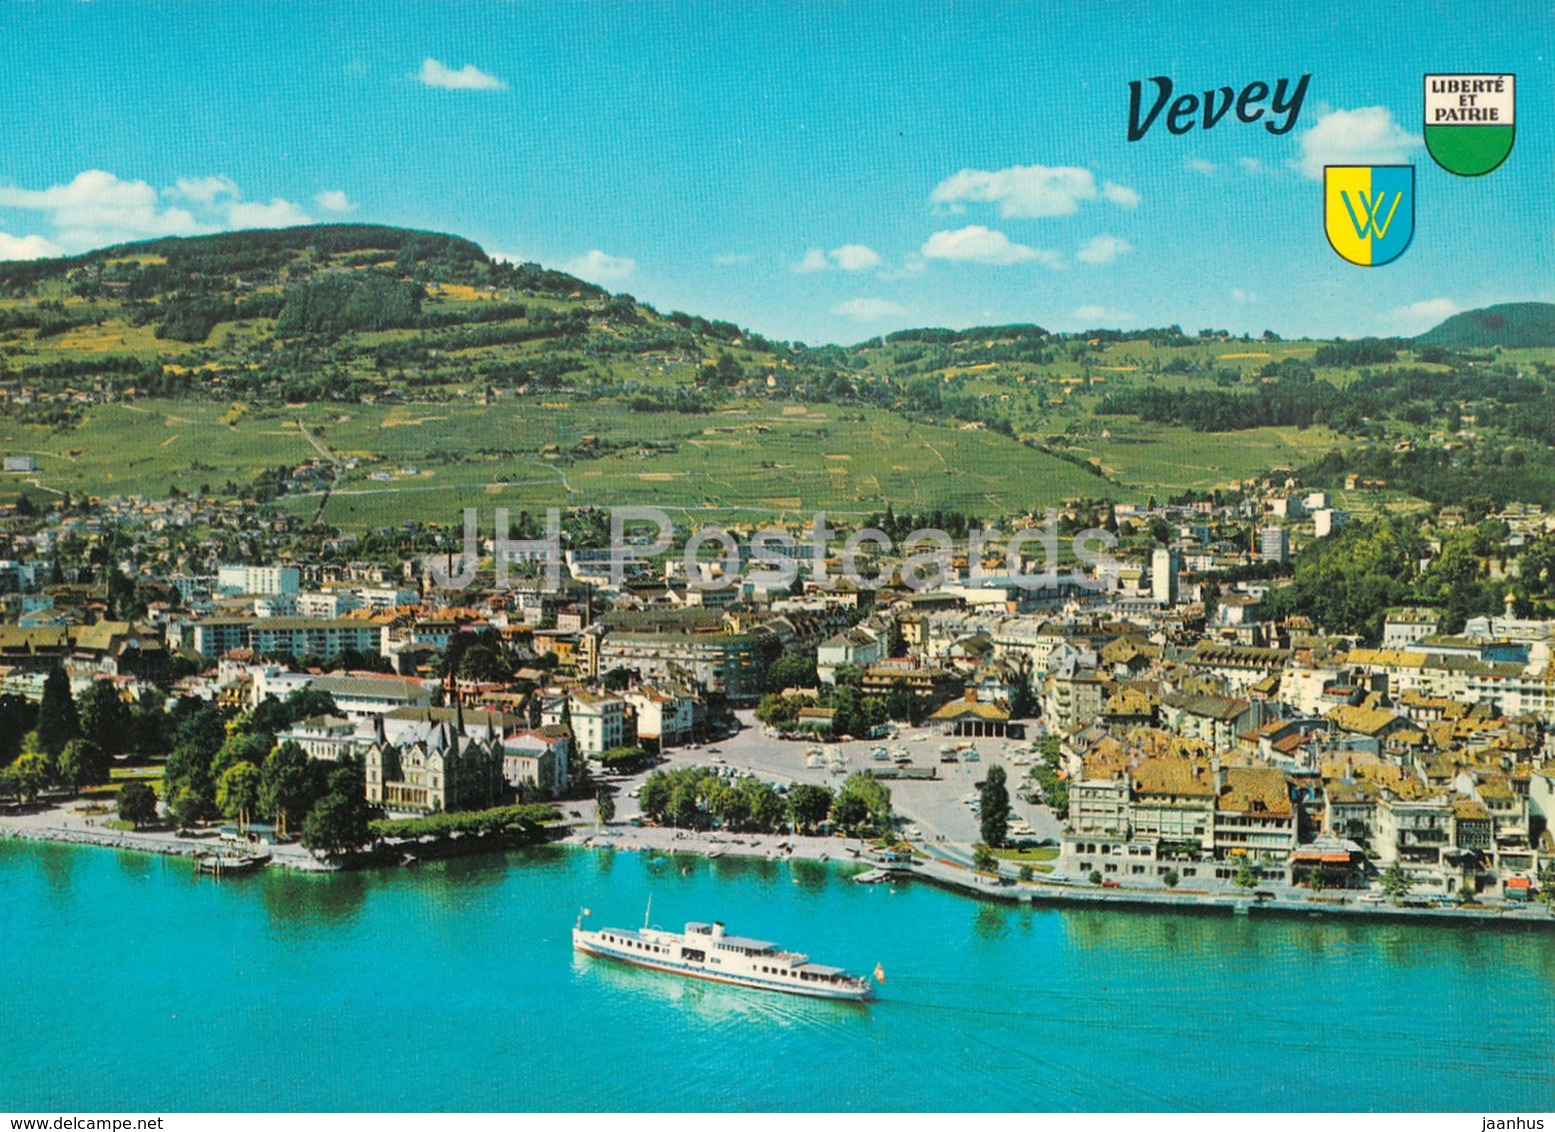 Vevey Chardonne Et Mont Pelerin - Vue Aerienne - Aerial View - Boat - 9141 - Switzerland - Unused - Chardonne